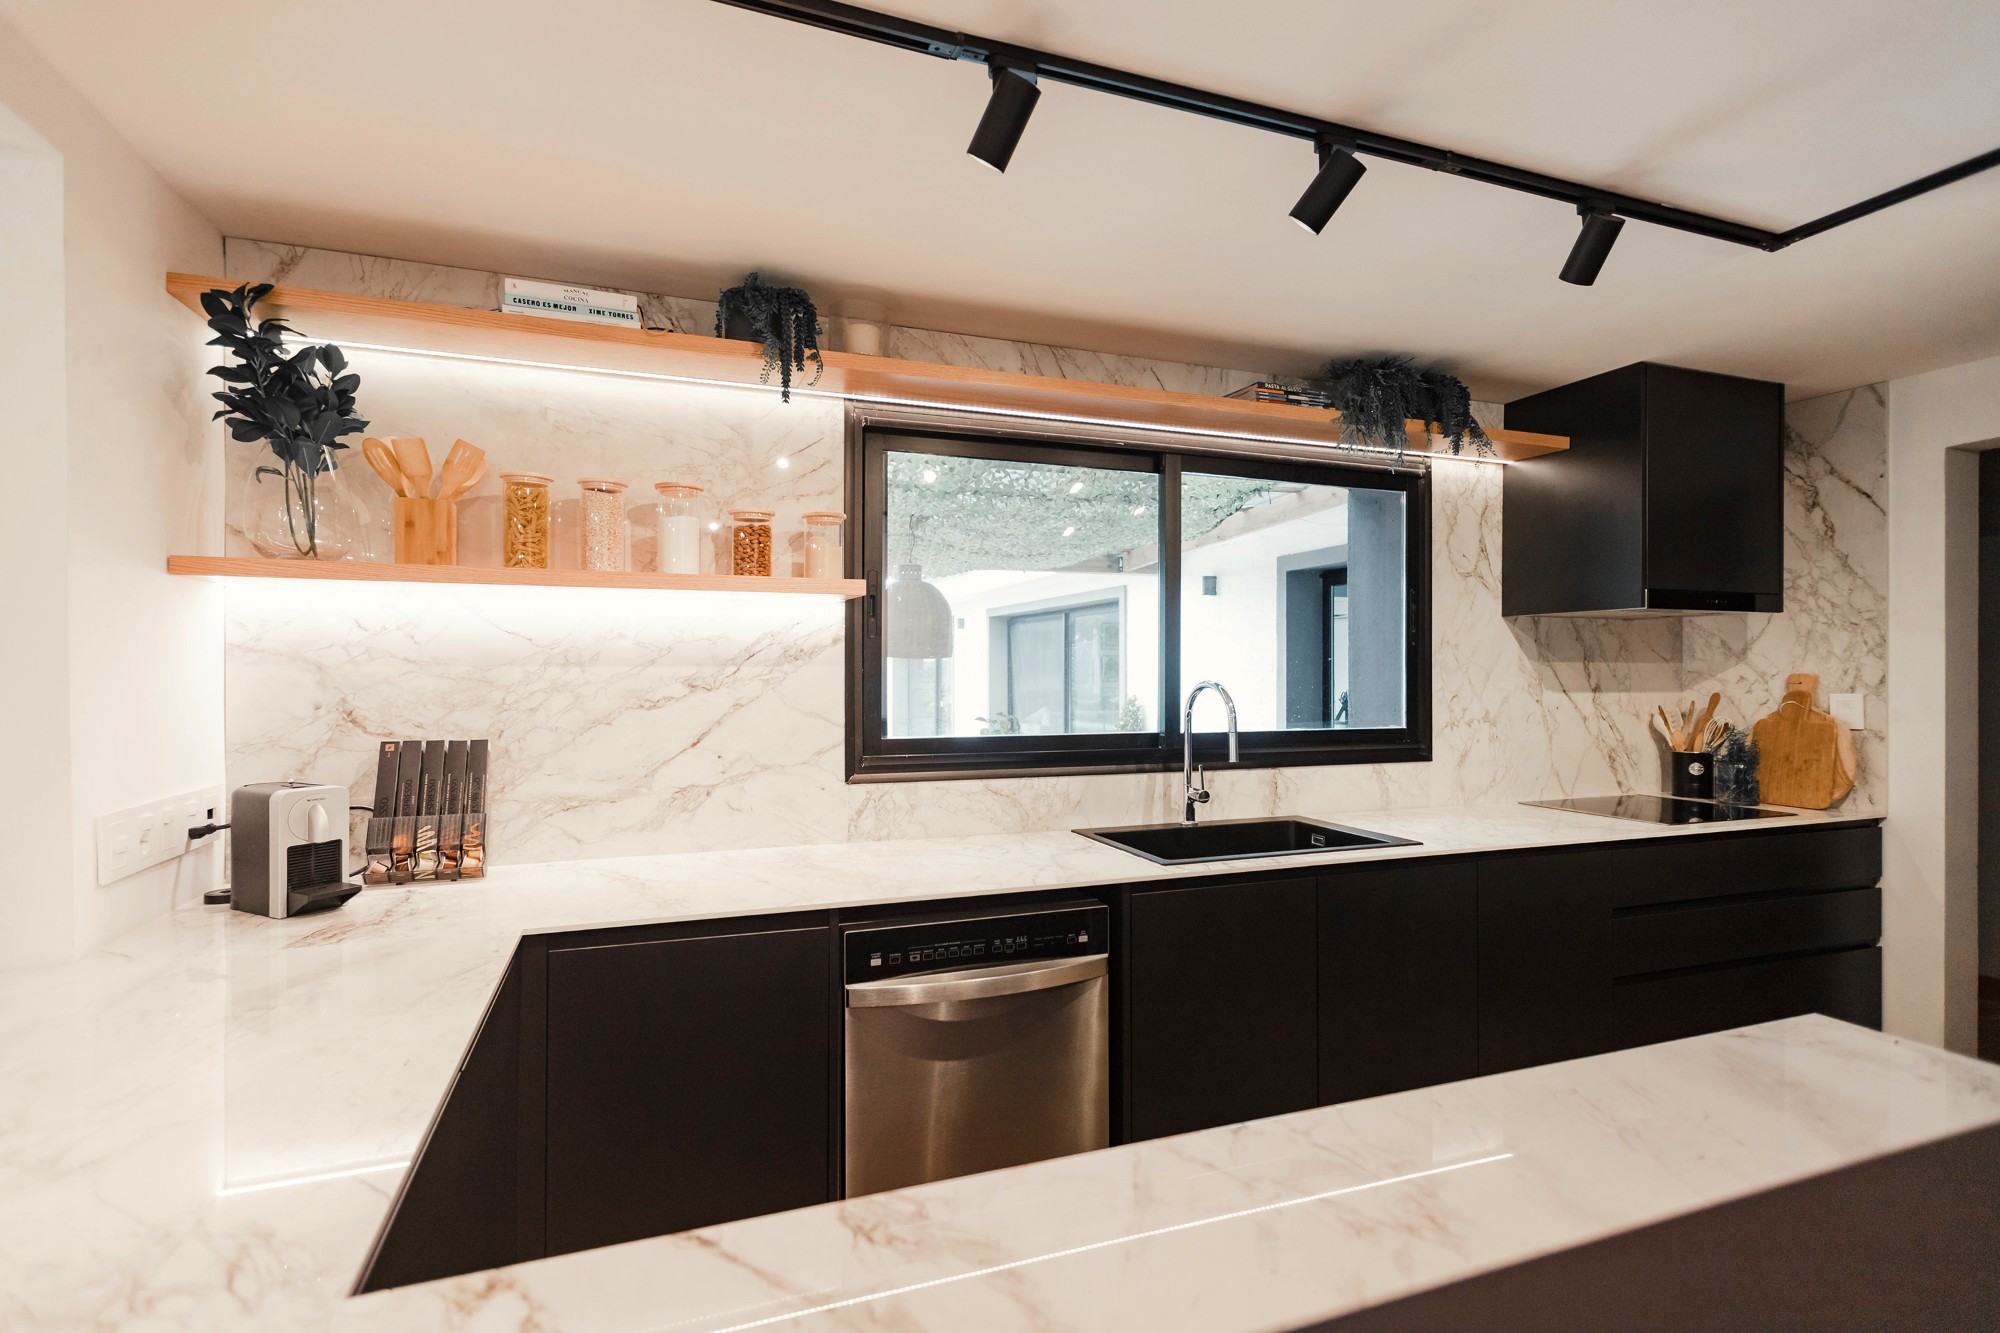 Bildnummer 37 des aktuellen Abschnitts von Kitchen and dining room merged by a precise design von Cosentino Deutschland